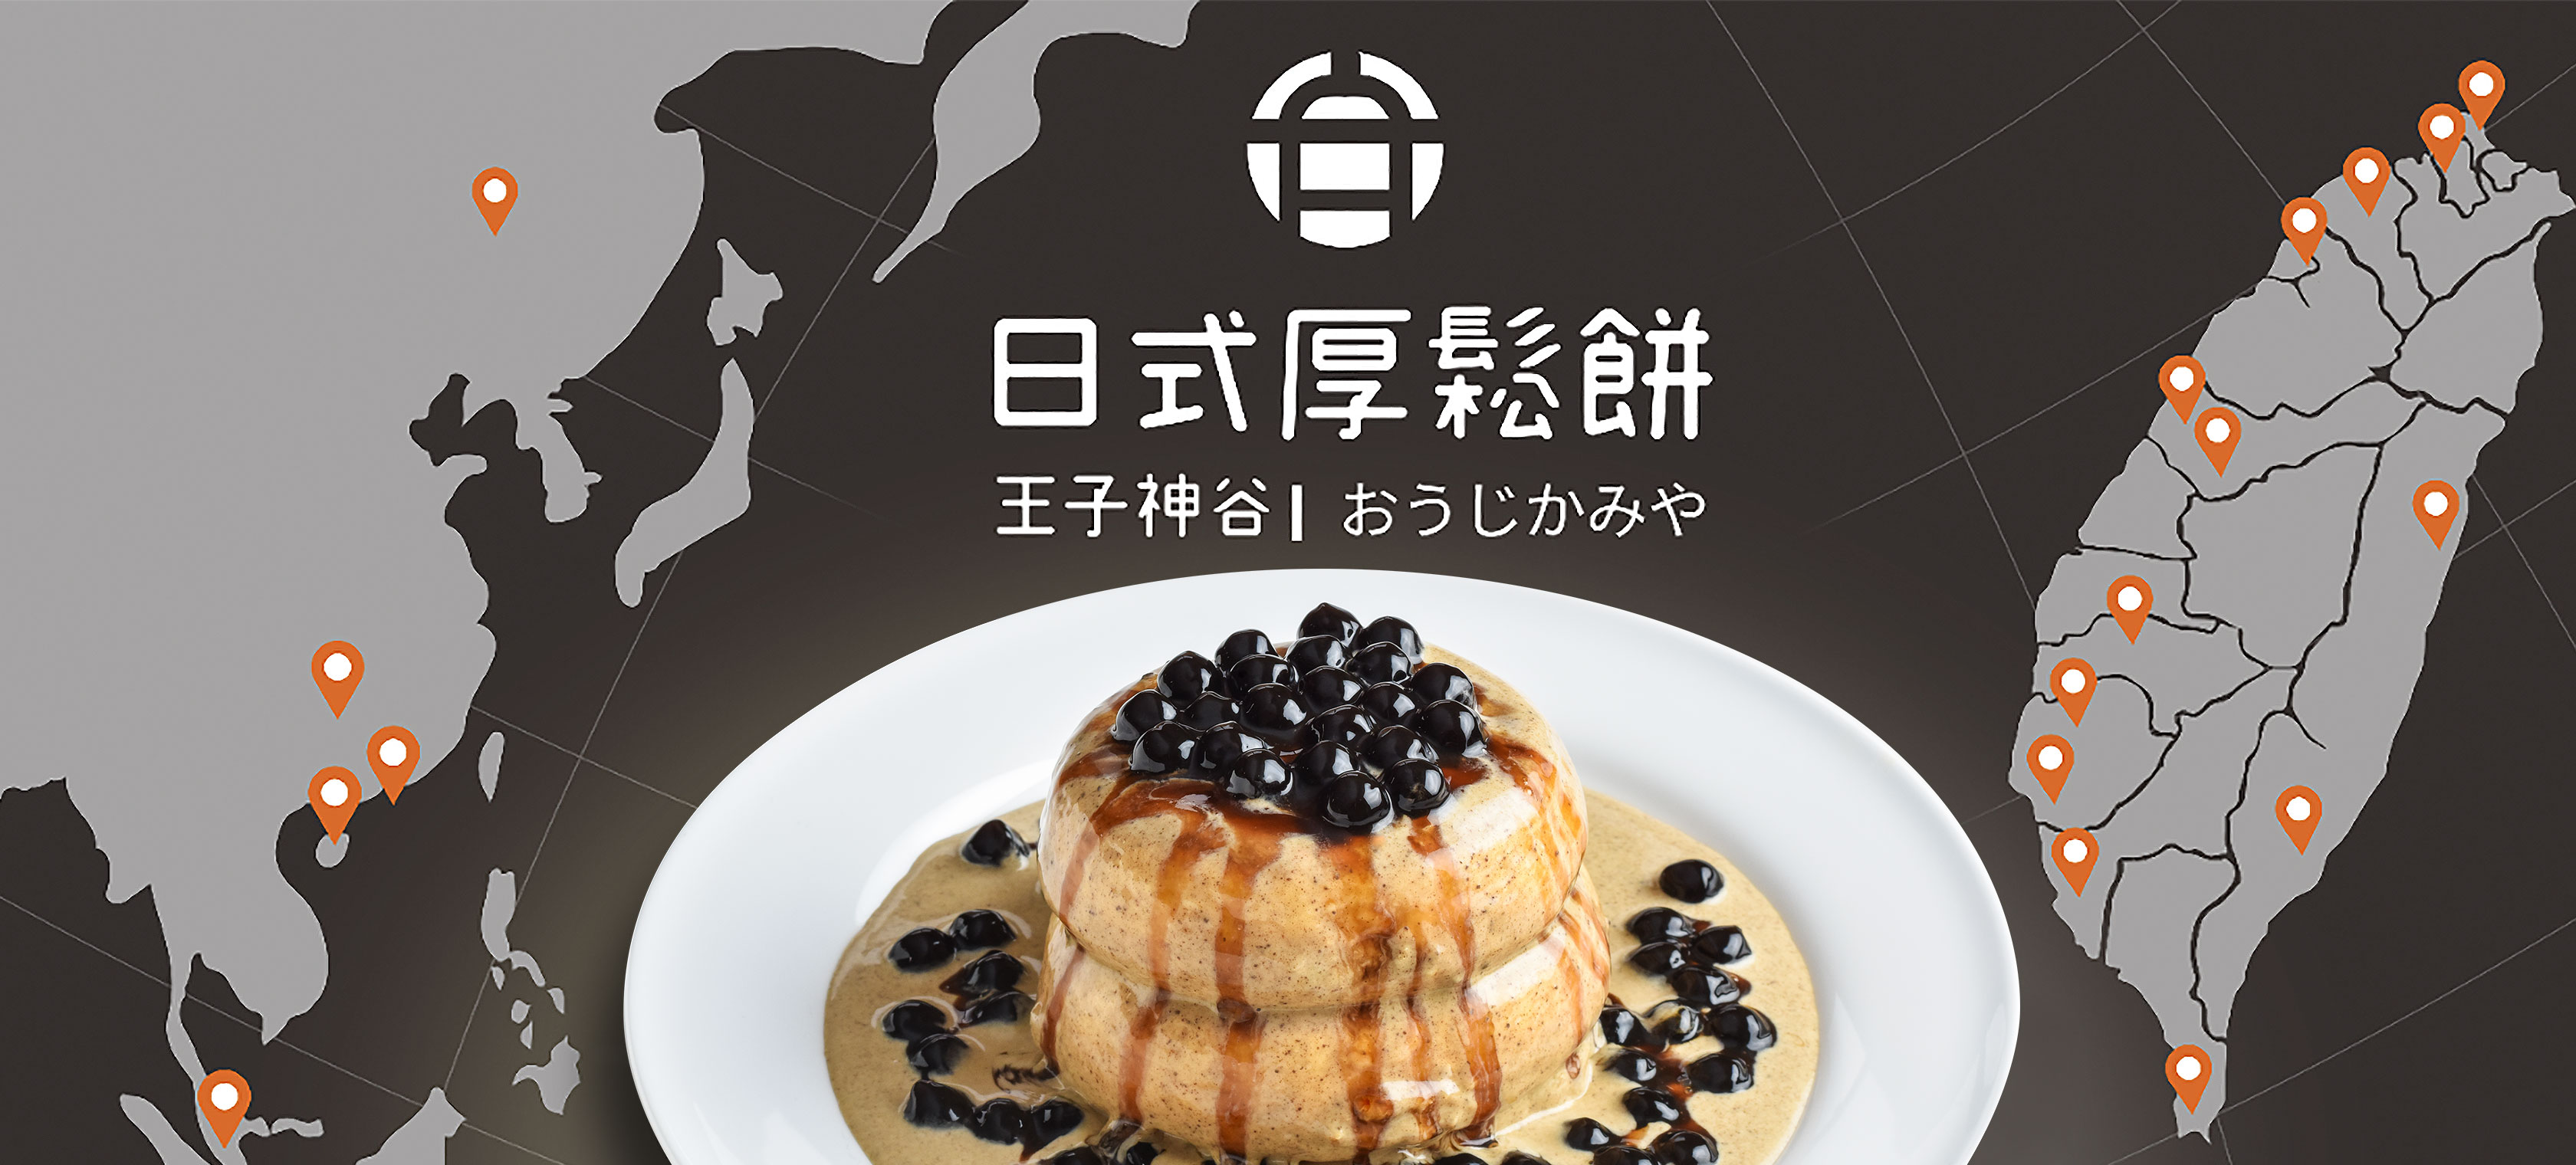 王子神谷 台湾で行列ができる店で話題のパンケーキが日本初上陸